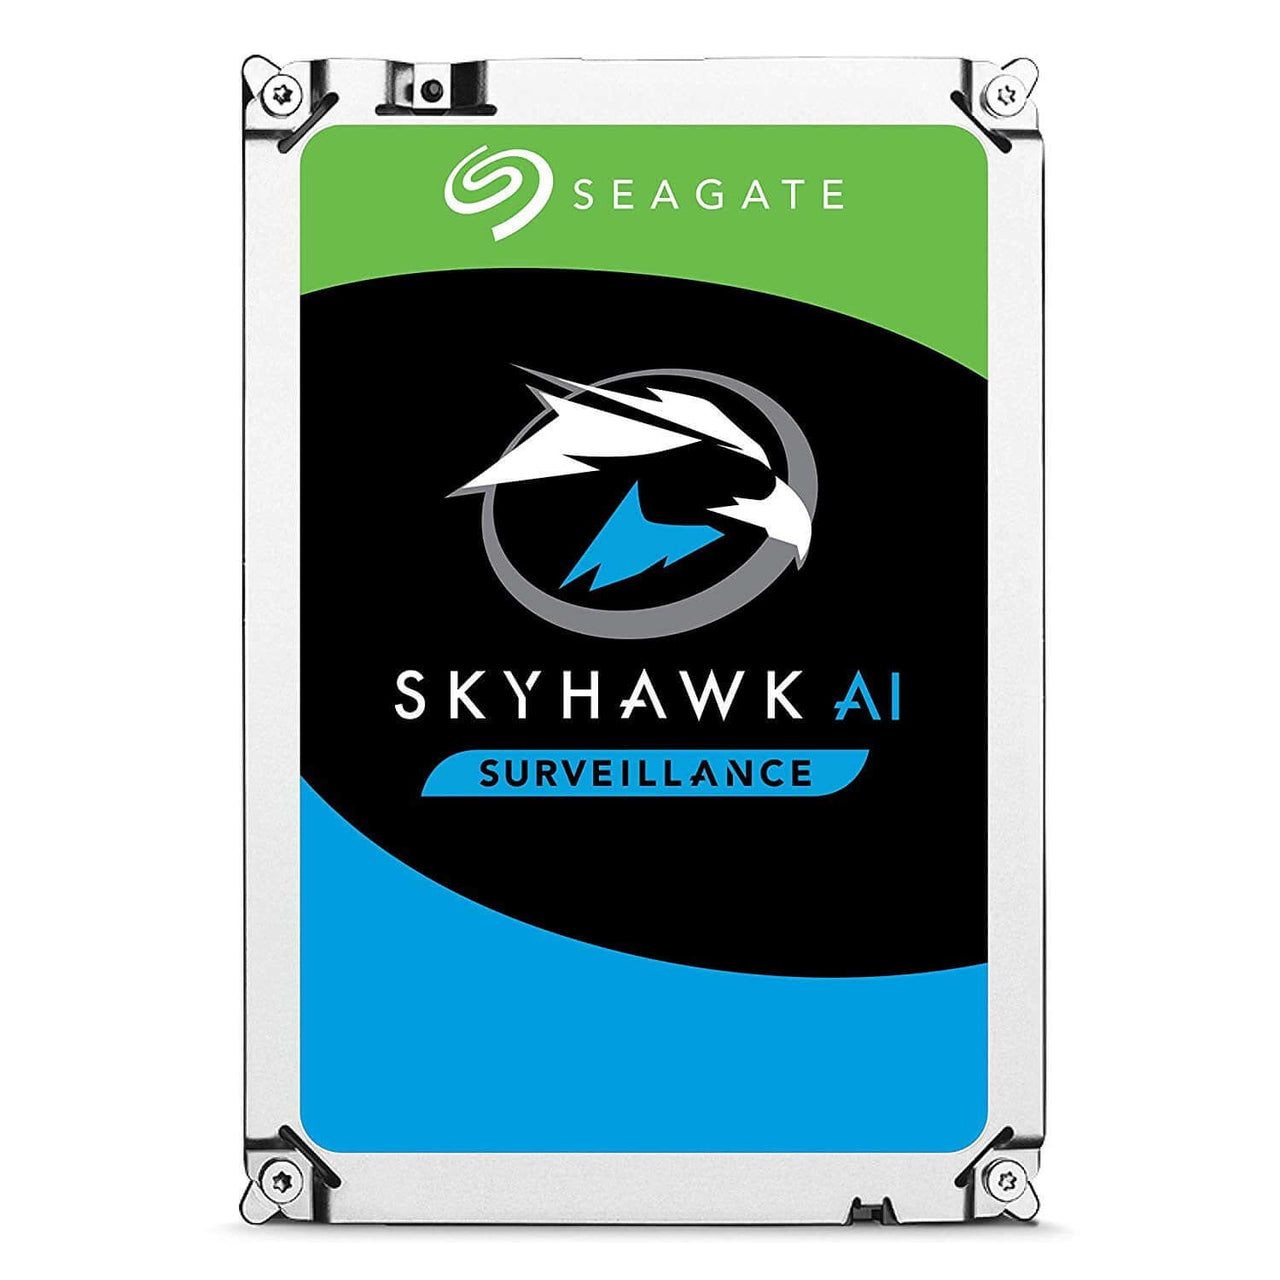 Seagate Skyhawk AI 18TB SATA Hard Drives Dubai UAE